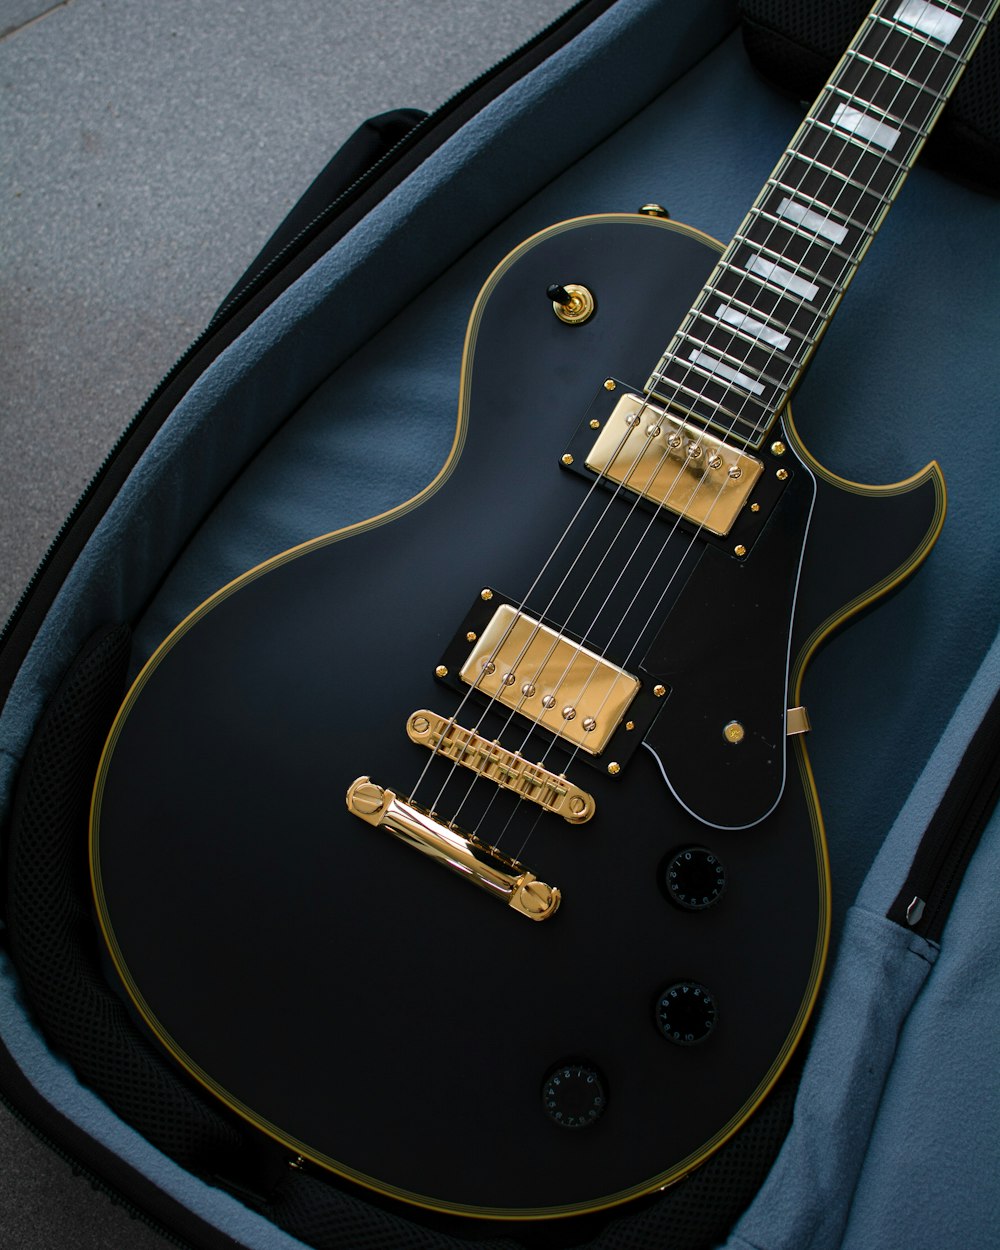 Foto Uma guitarra elétrica preta e dourada em um estojo – Imagem de Sacos  grátis no Unsplash